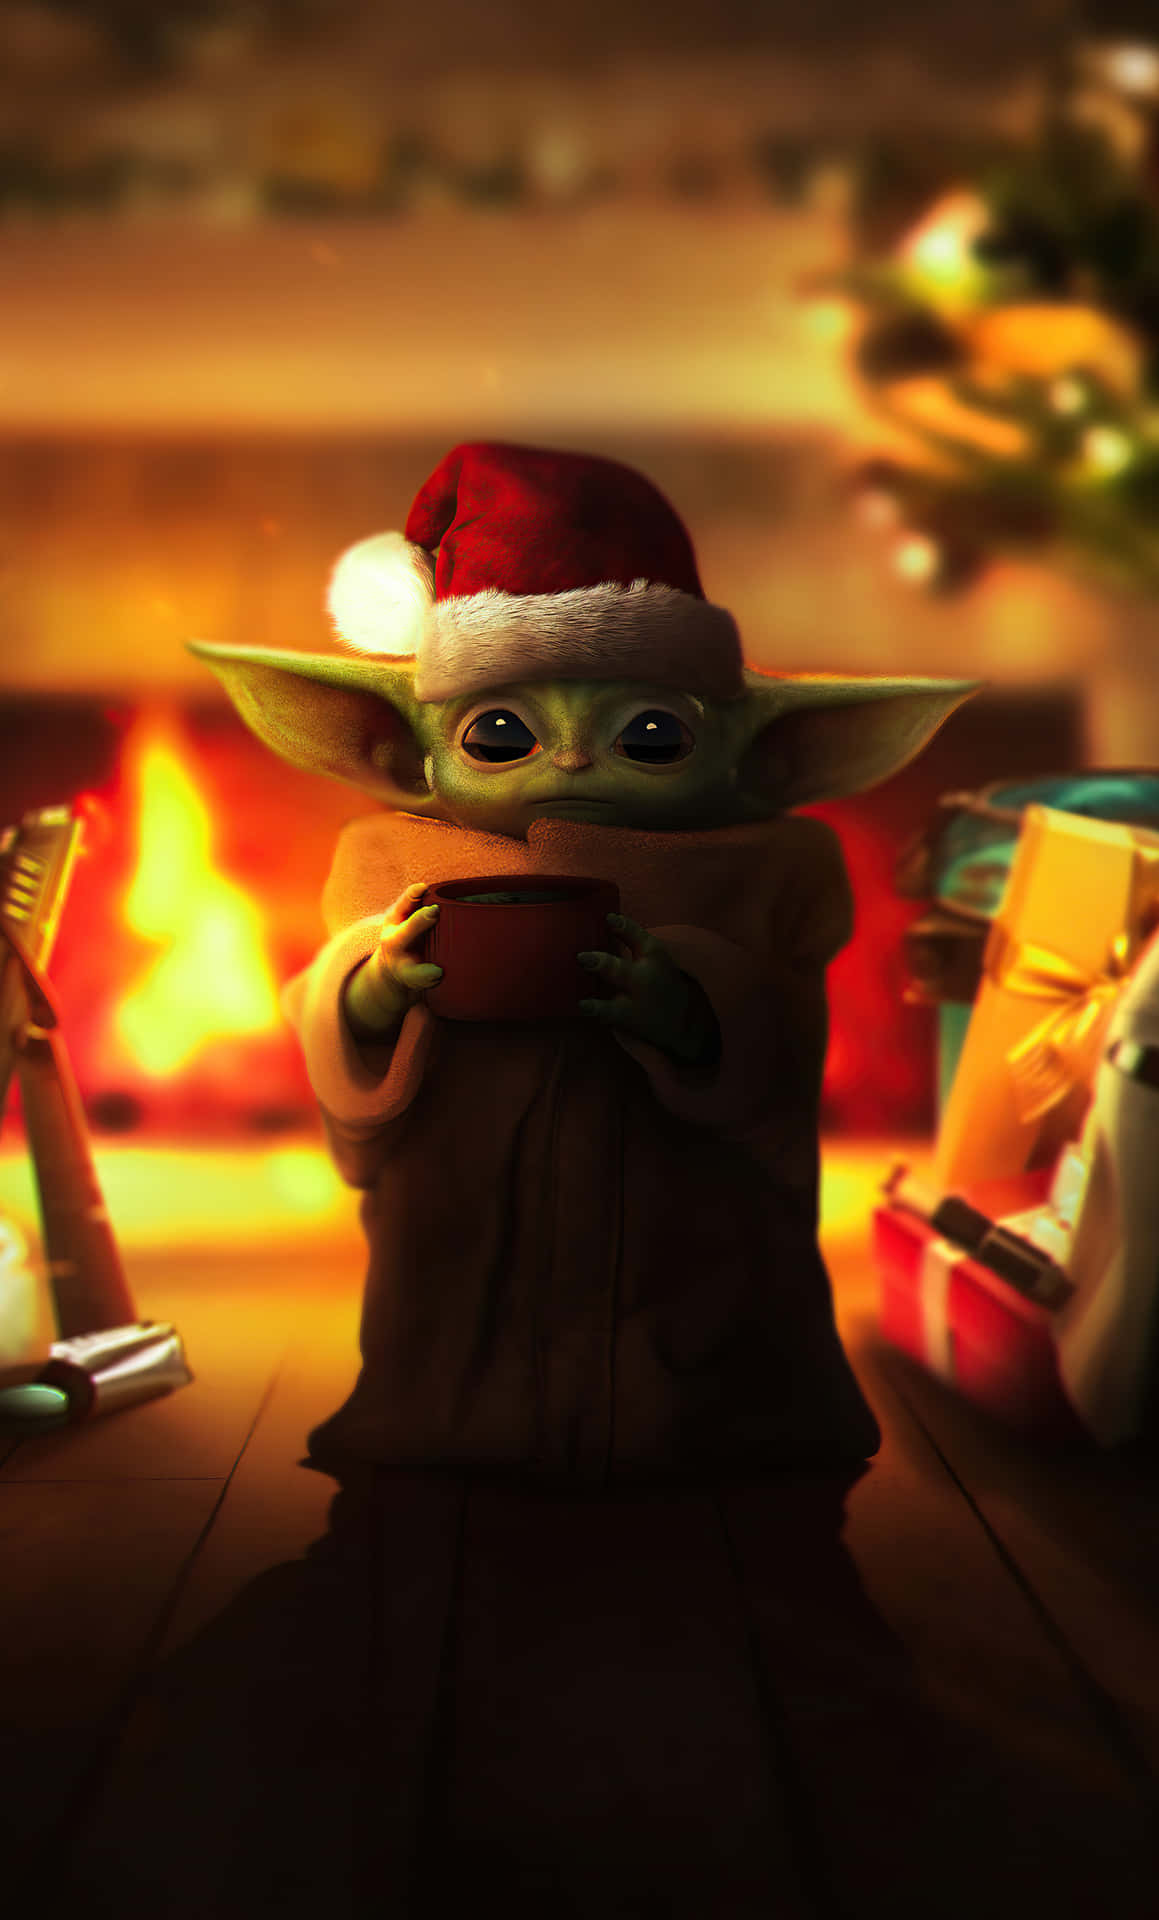 Bildder Bezaubernde Baby Yoda, Festlich Eingepackt Für Weihnachten. Wallpaper